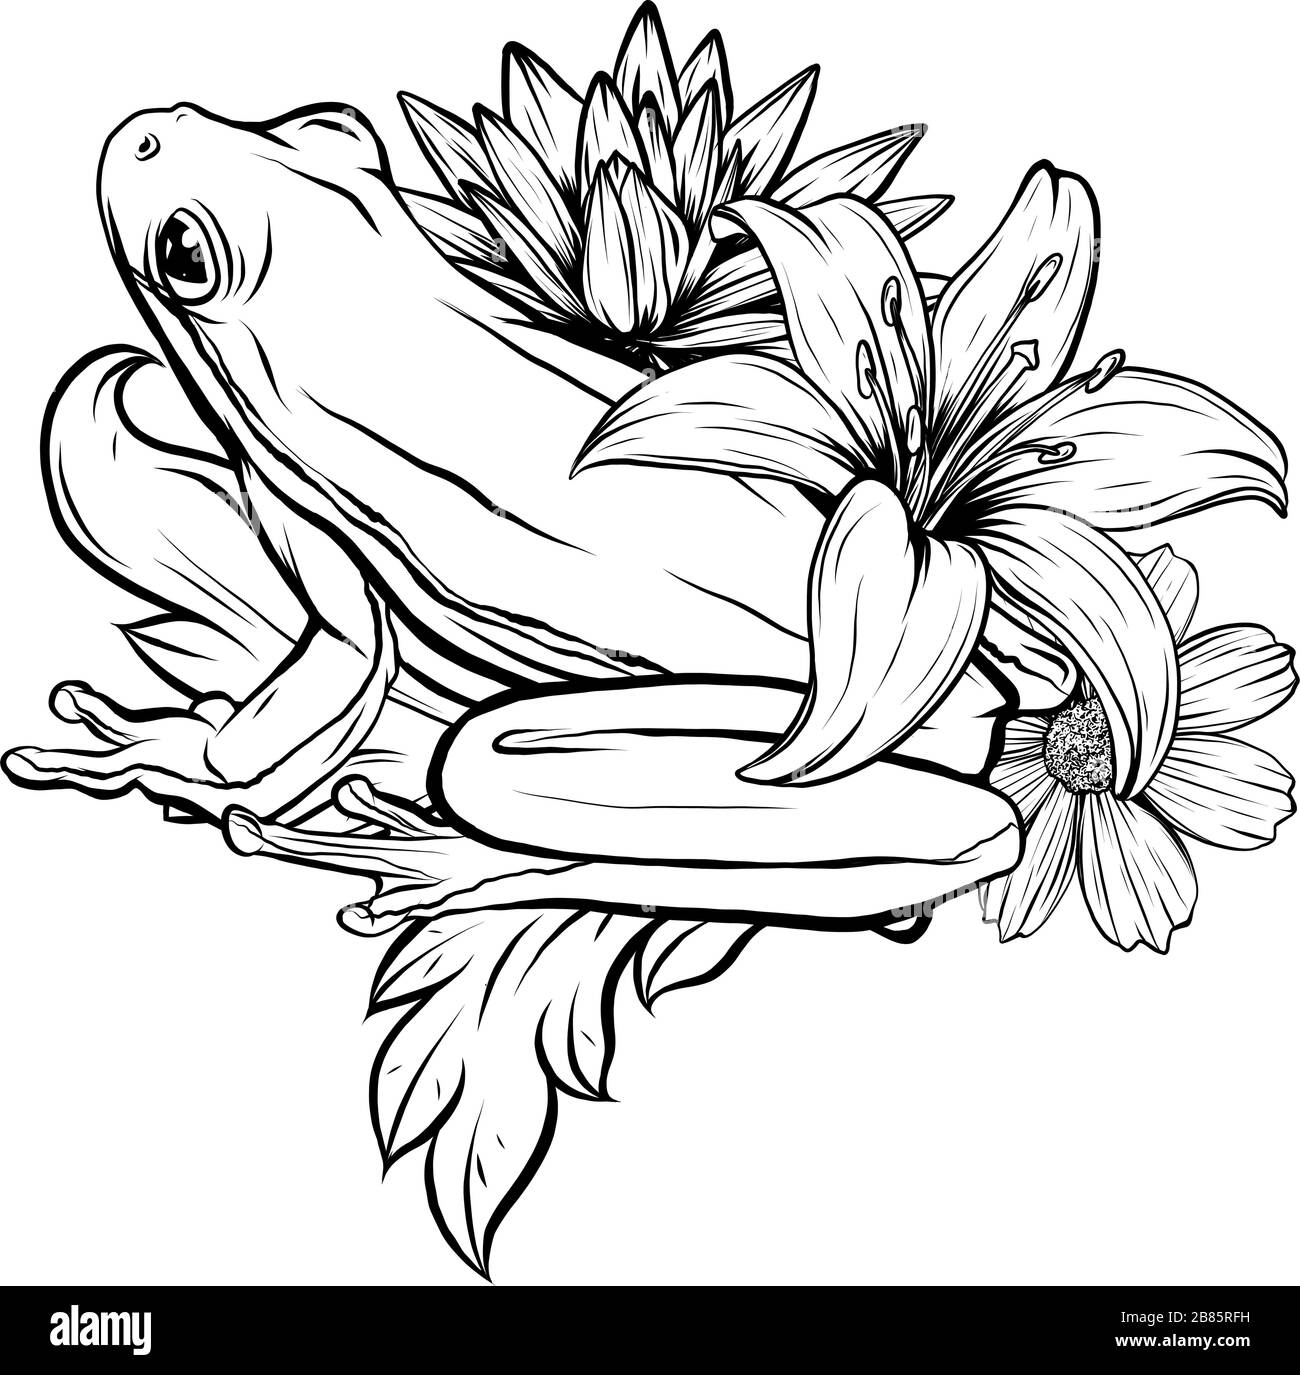 Grenouille à gribouille ornée dessinée à la main noire et blanche dans un style graphique. Illustration vectorielle avec ornement décoratif floral Illustration de Vecteur